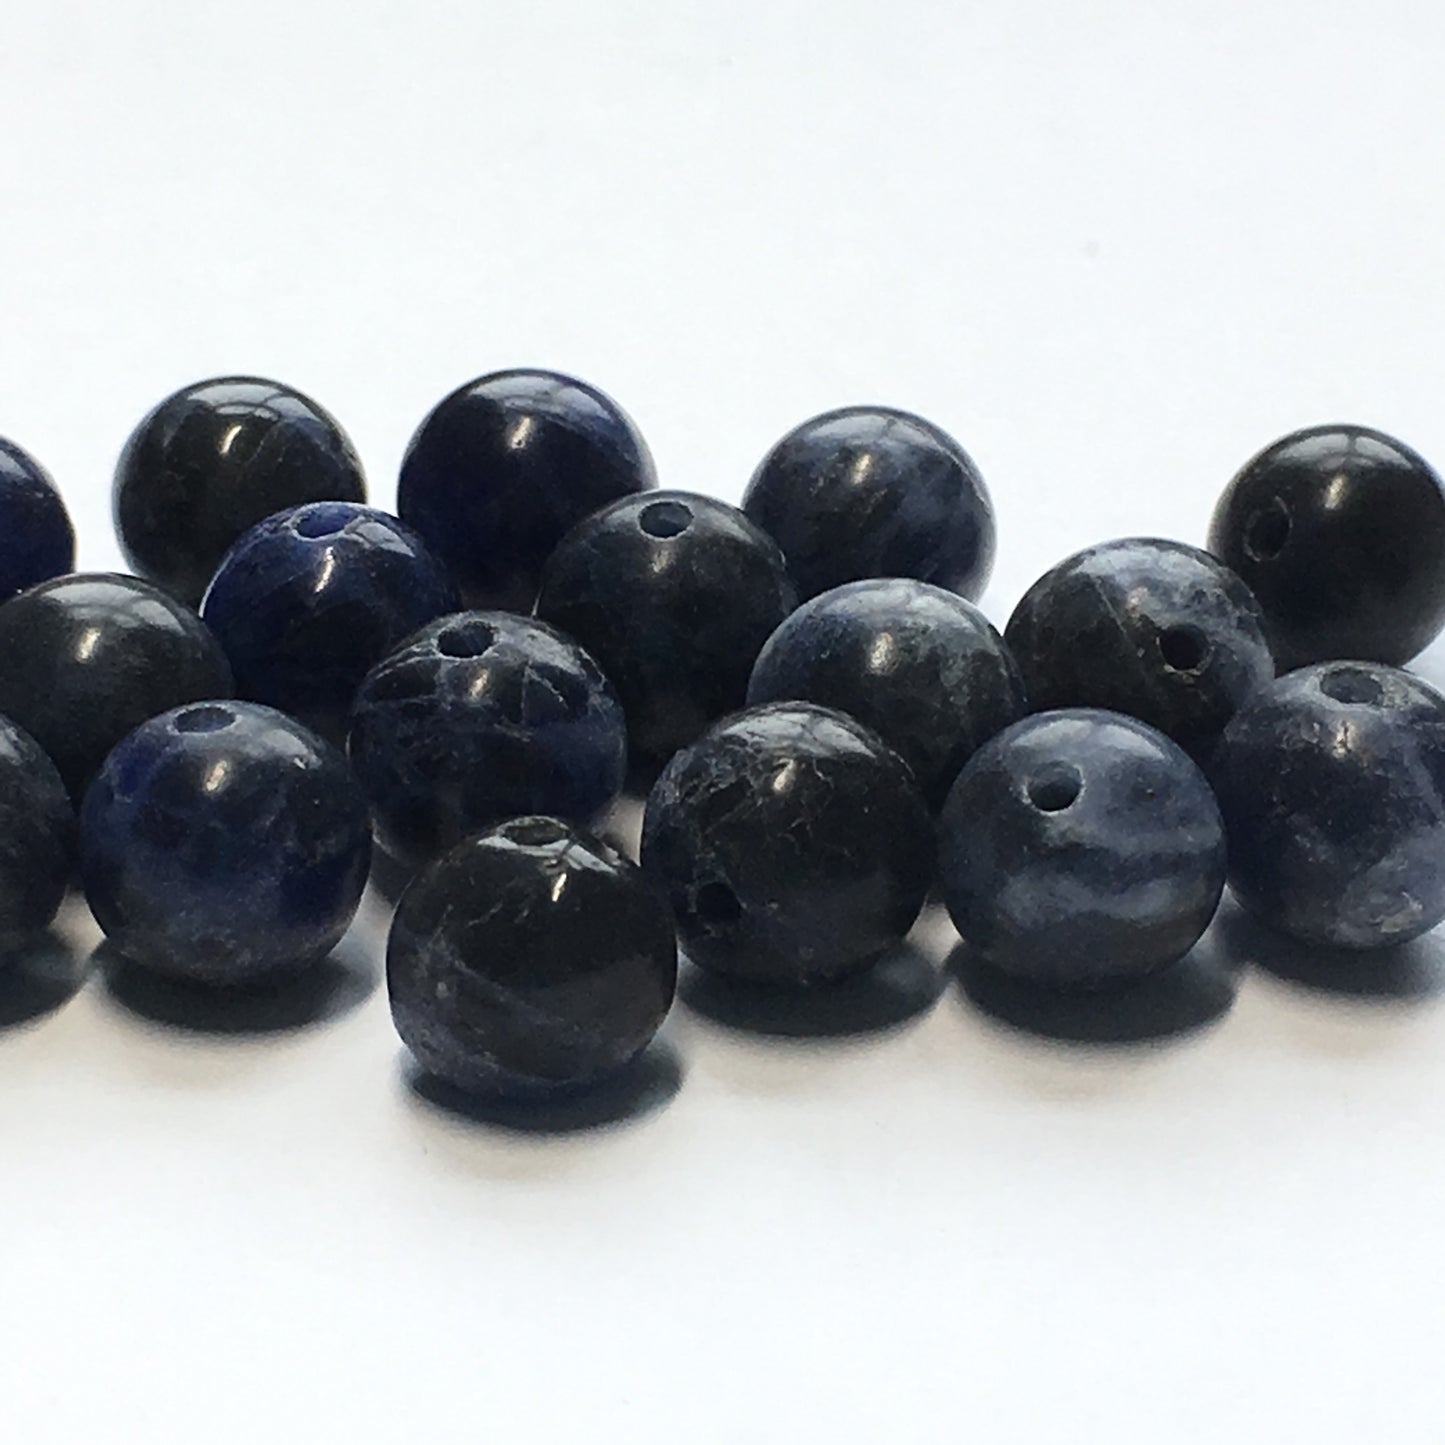 Sodalite Semi-Precious Stone Round Beads, 8 mm, 21 Beads, Irregulars